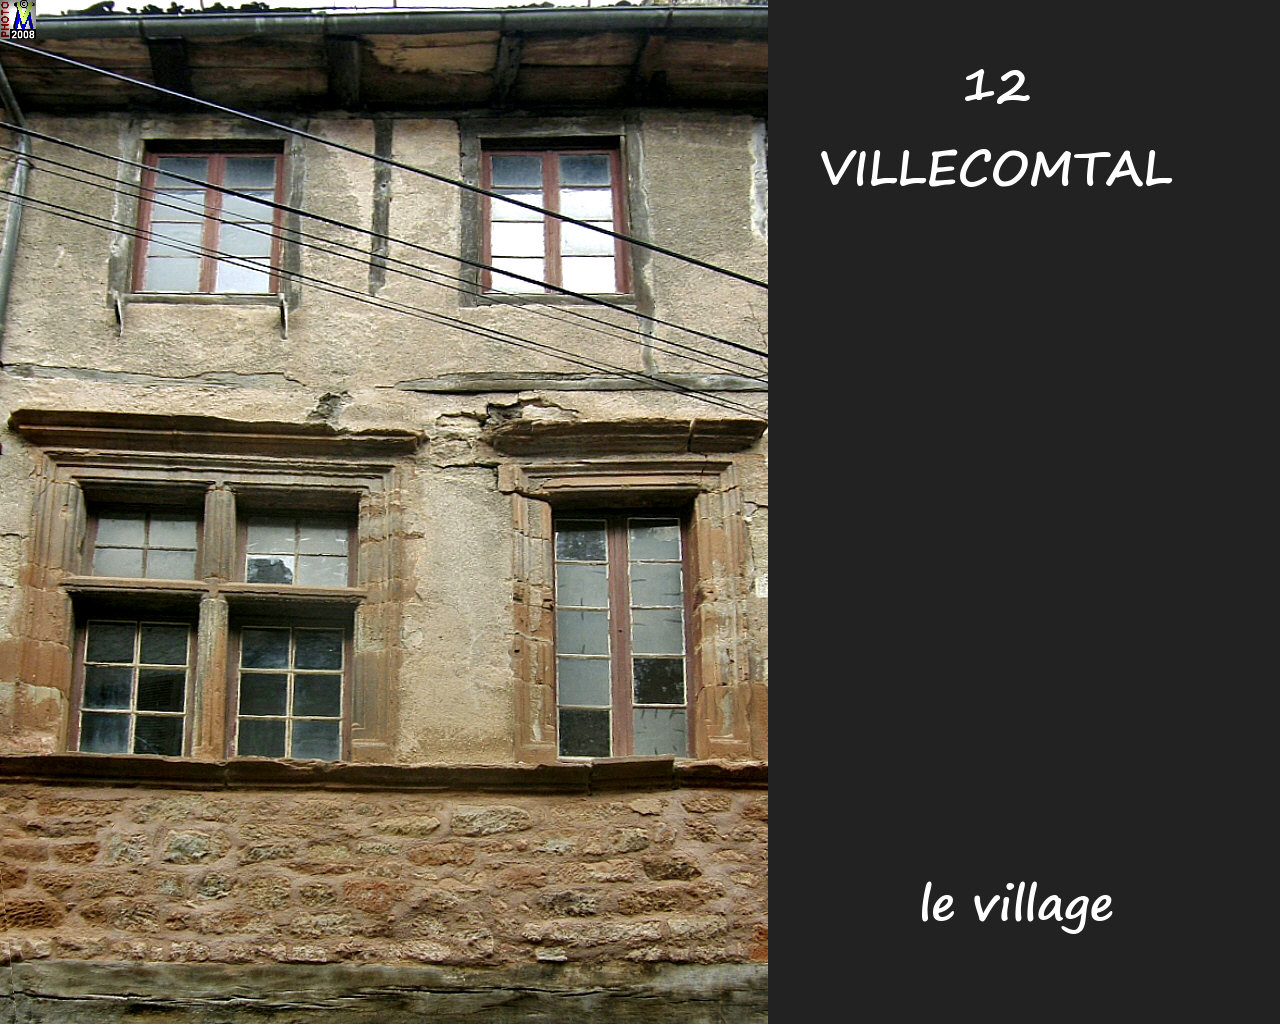 12VILLECOMTAL_village_122.jpg